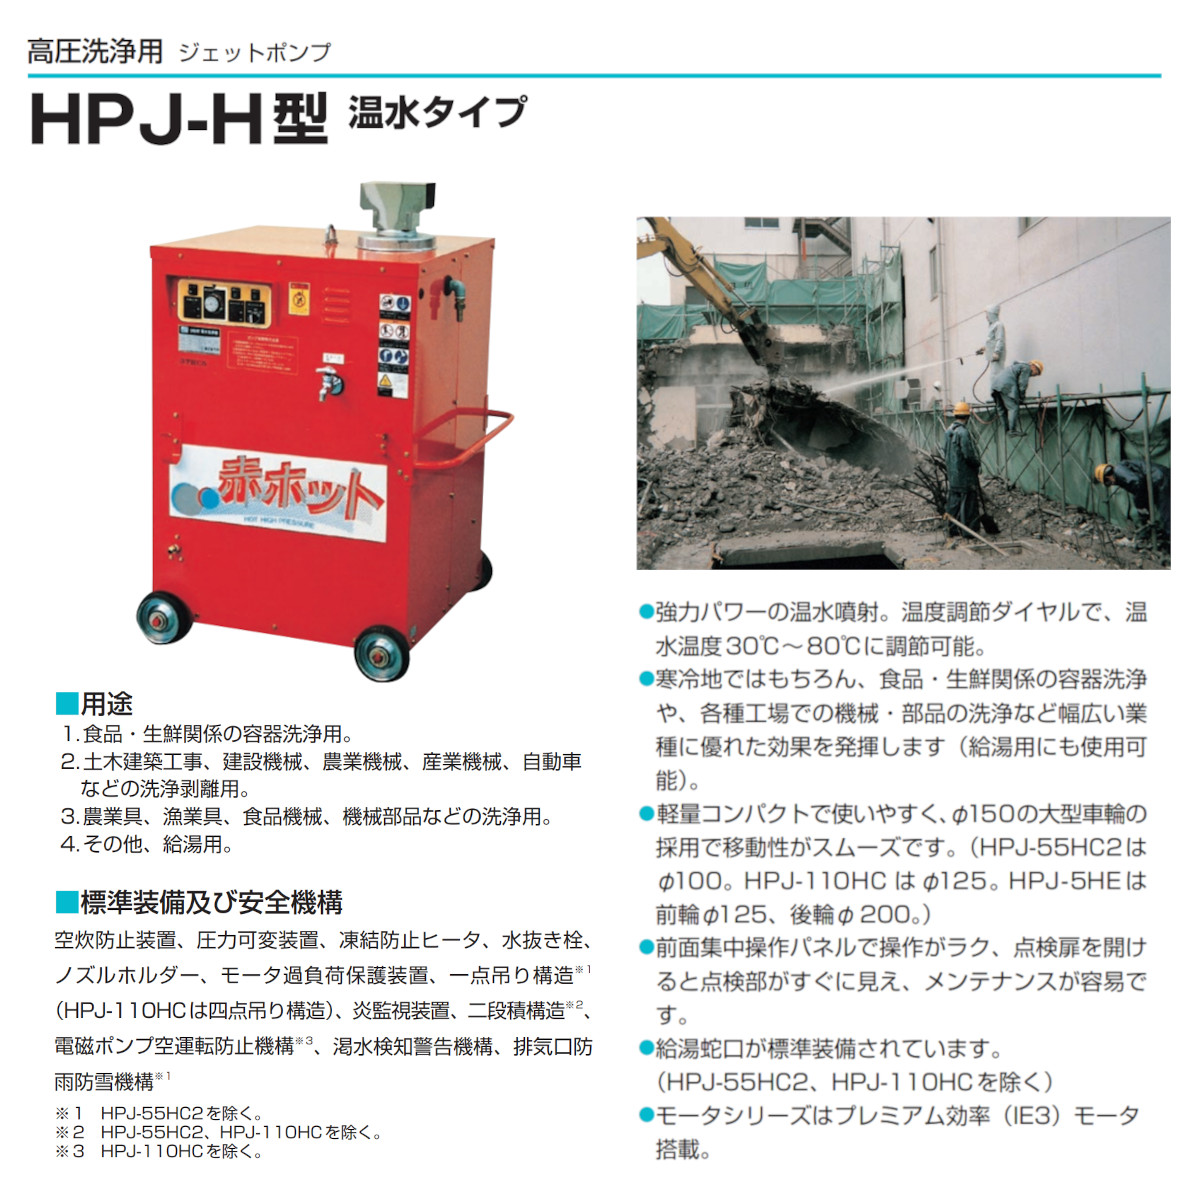 ツルミ 温水高圧洗浄機 HPJ-37HC7 三相200V 温水タイプ ノズル